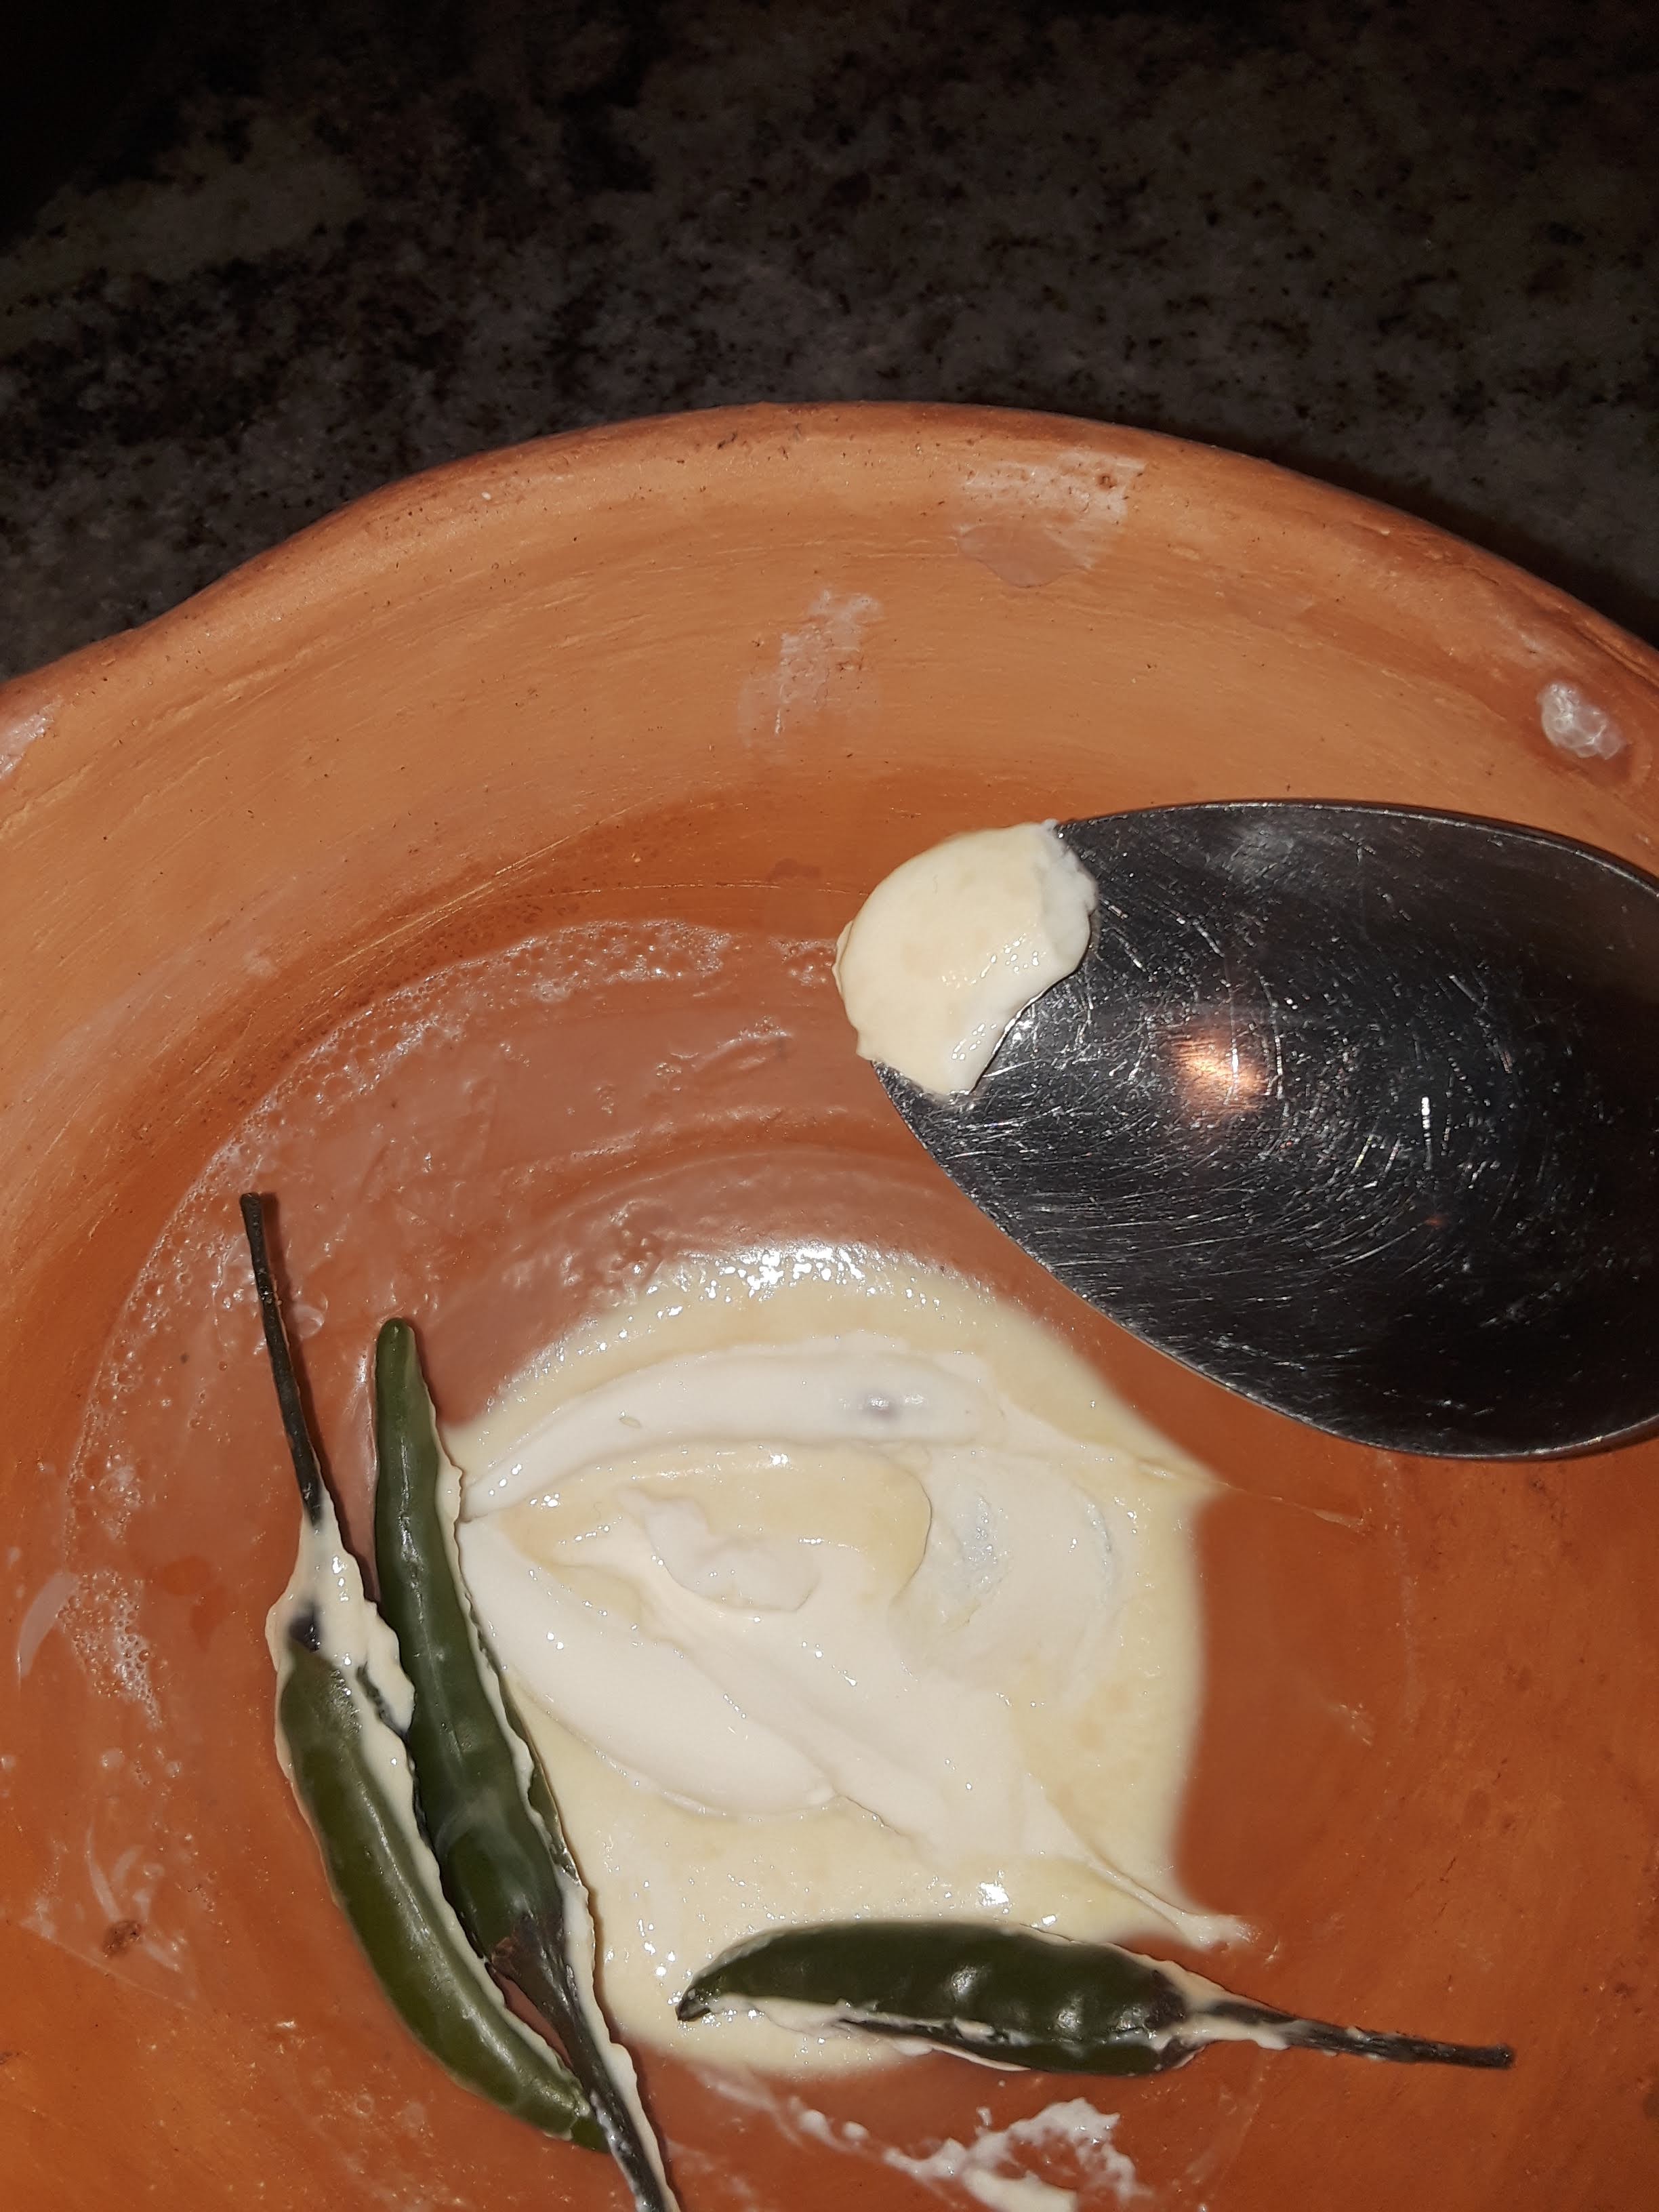 Making yogurt at home in MEC